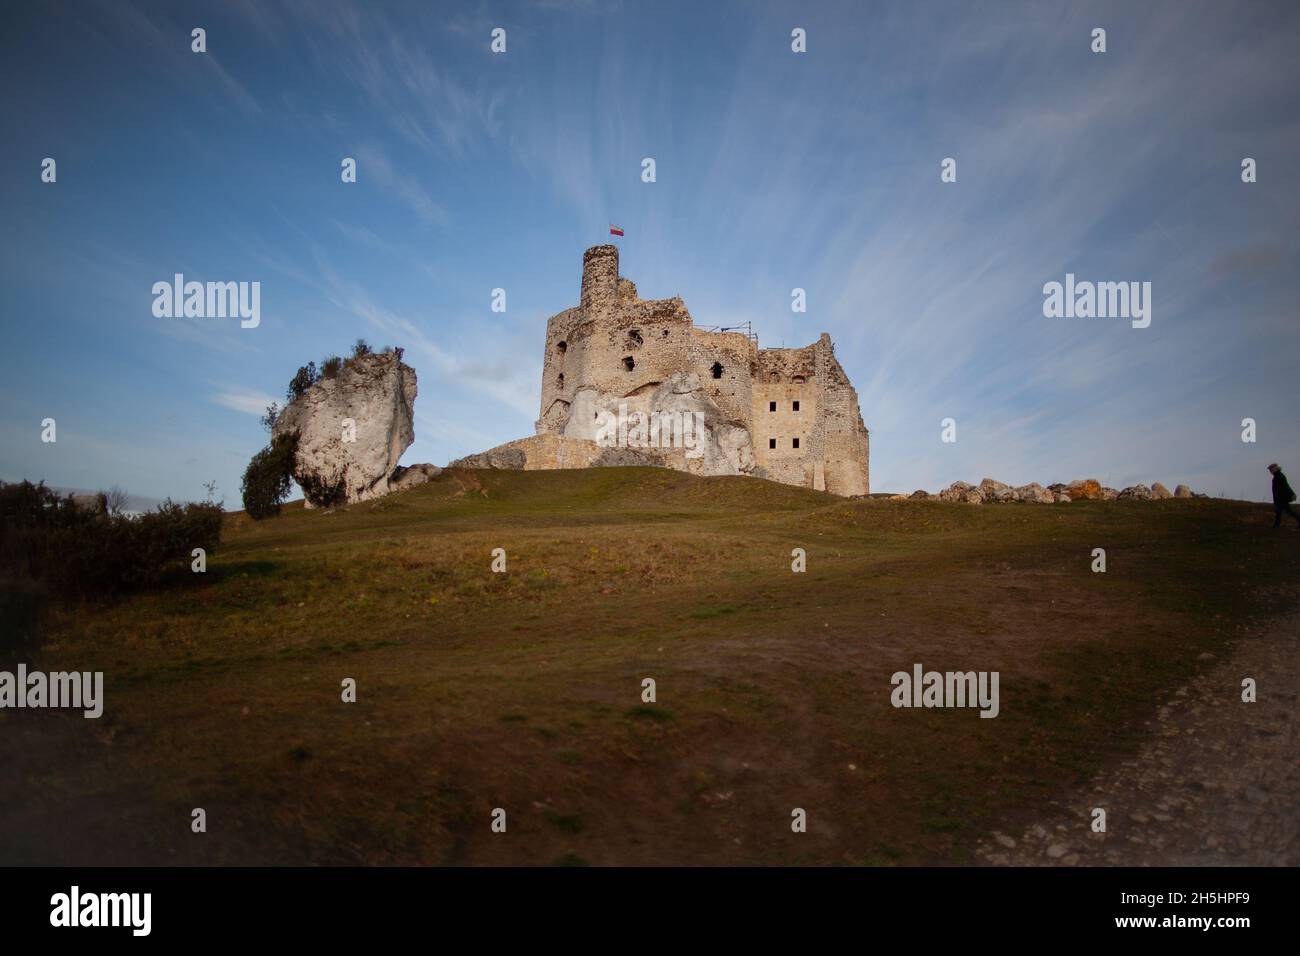 Ruines du château à Ogrodzieniec, magnifique paysage avec ruines du château sur la colline avec ciel clair arrière-plan Trail des nids des aigles, Pologne Banque D'Images